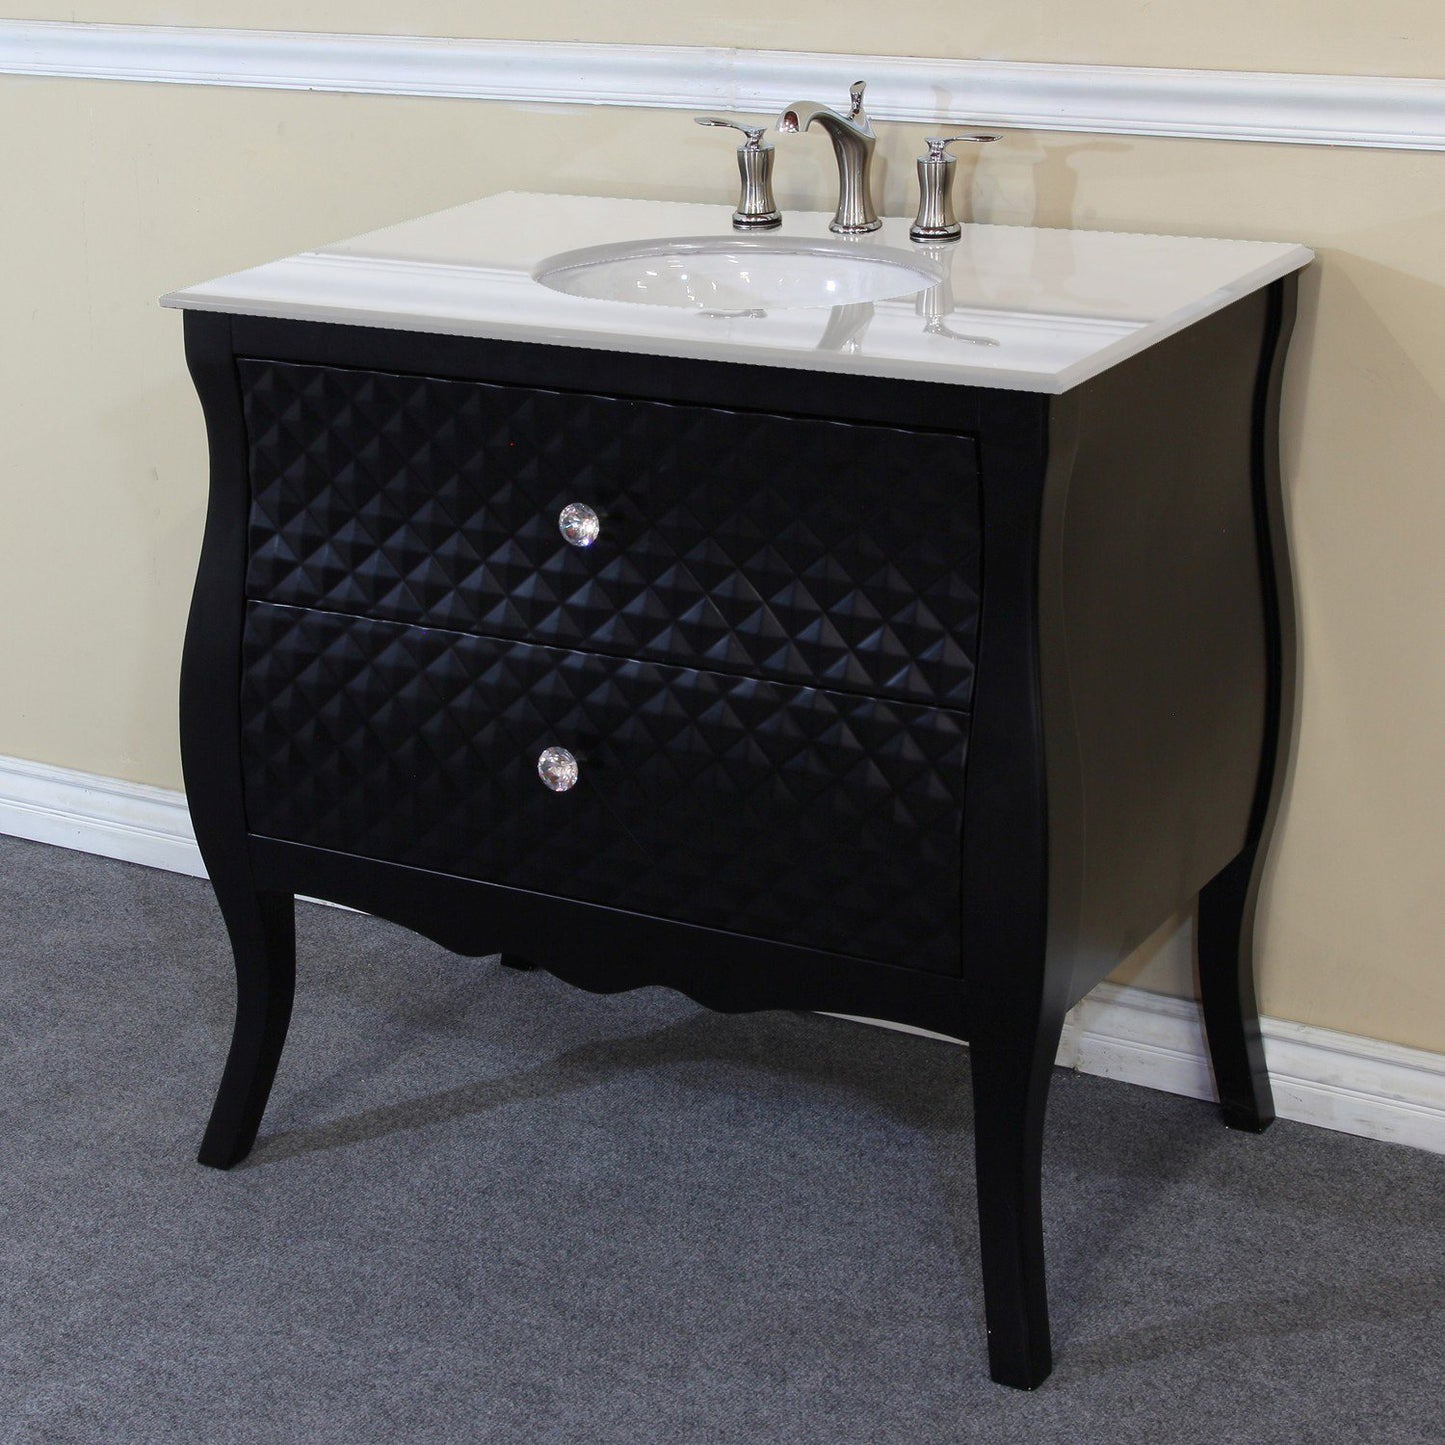 35.4" In Single Sink Vanity Wood Black White Marble Top With Rectangular Sink - Luxe Bathroom Vanities